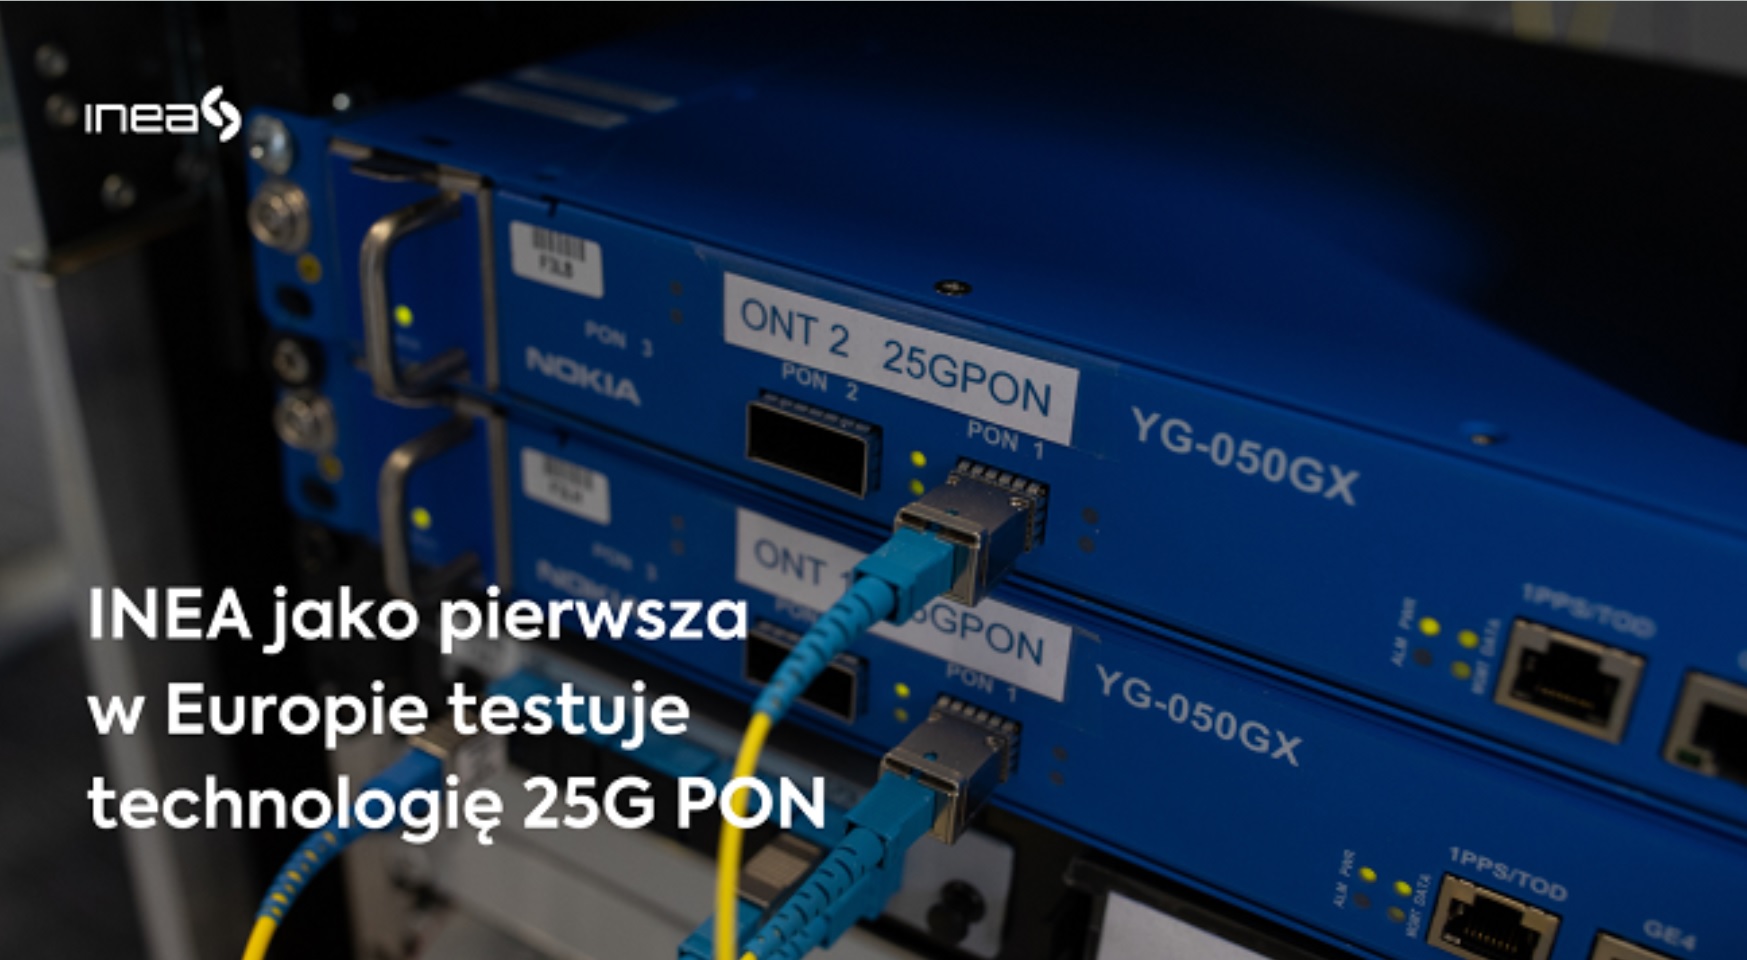 Inea ผู้ให้บริการ Cable สัญชาติโปแลนด์ พร้อมทดสอบเทคโนโลยี 25G PON รองรับ 5G backhaul  